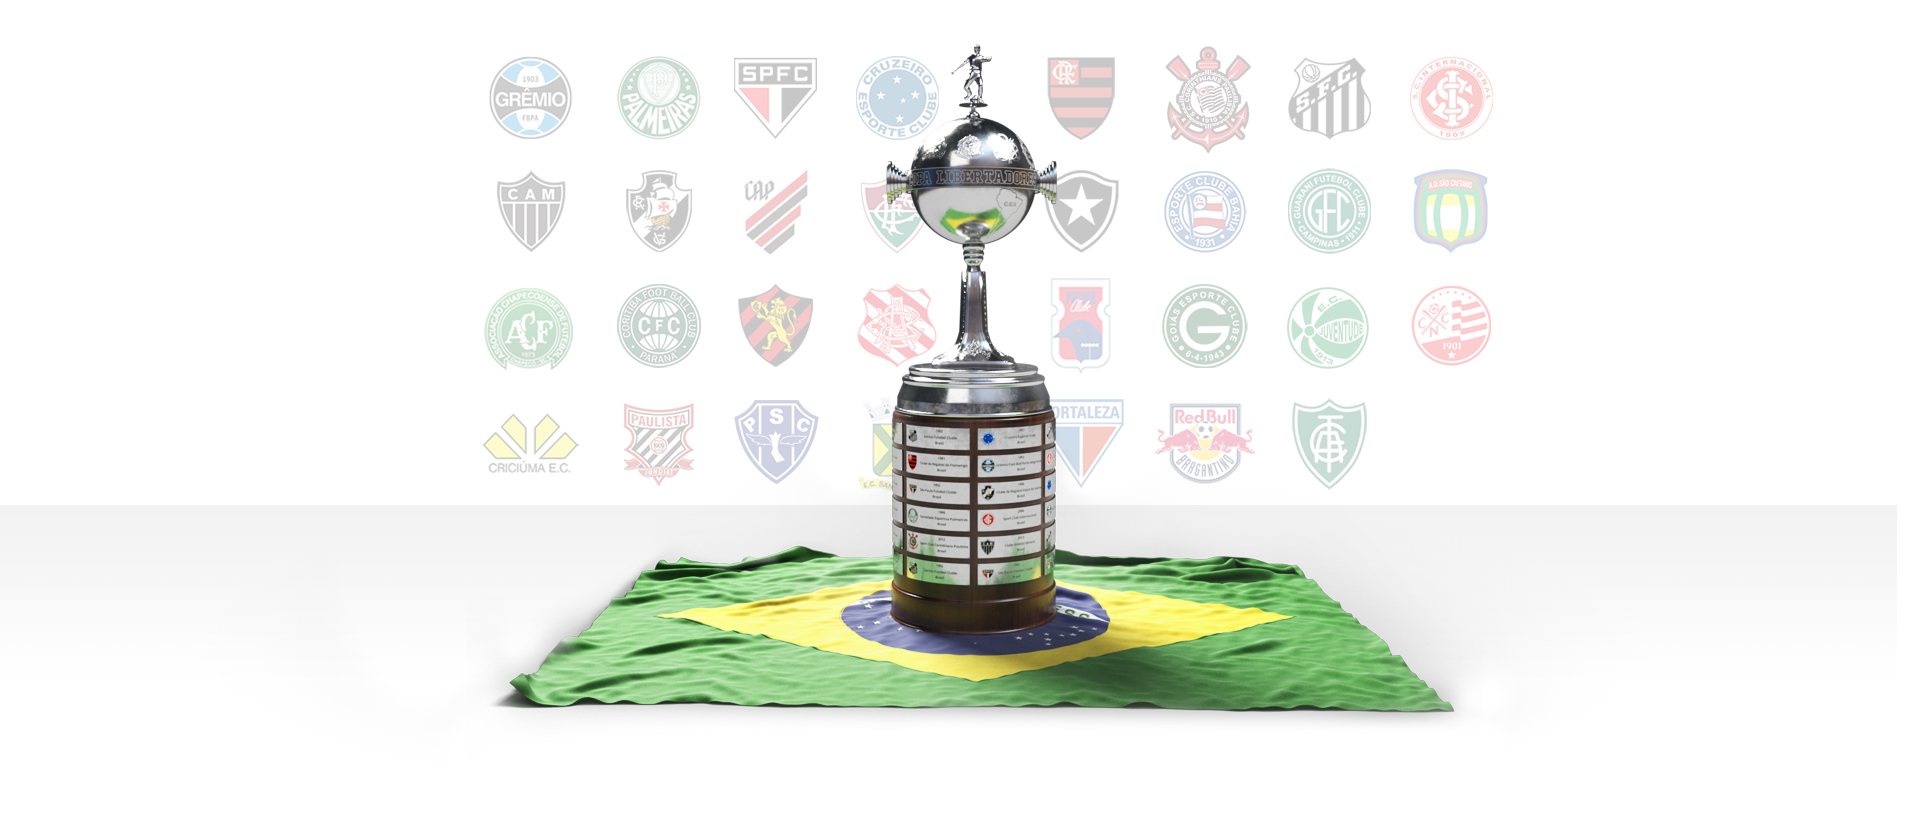 Imagem de Abertura - Taça Libertadores e Taça Mundial de Clubes